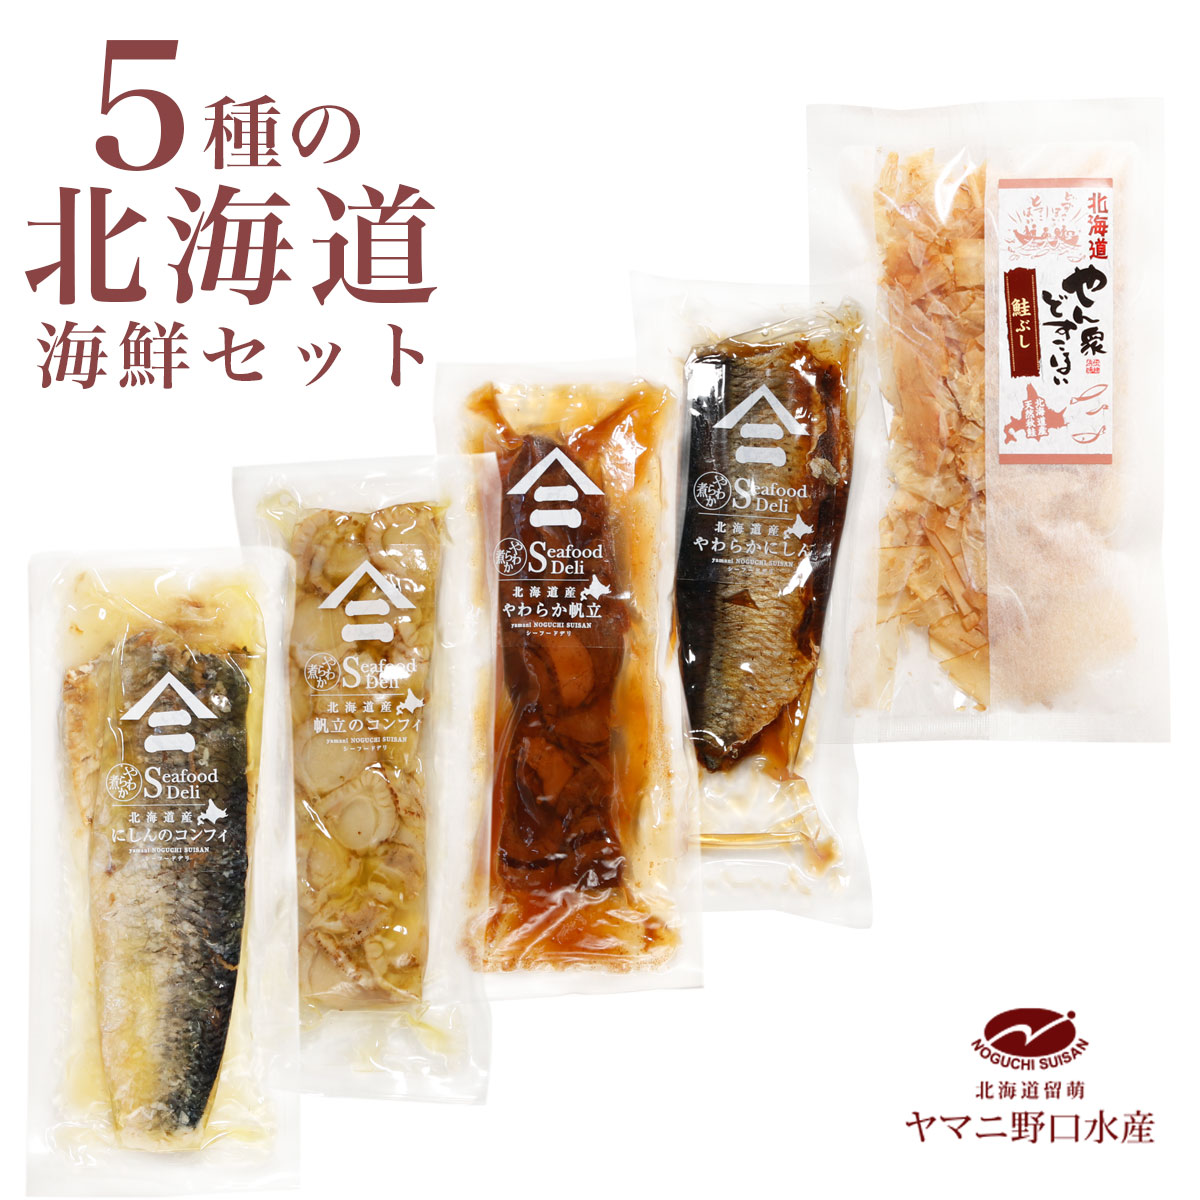 日本購入 りこ 様専用「にしんの燻製」他、おつまみ珍味セット 魚介類